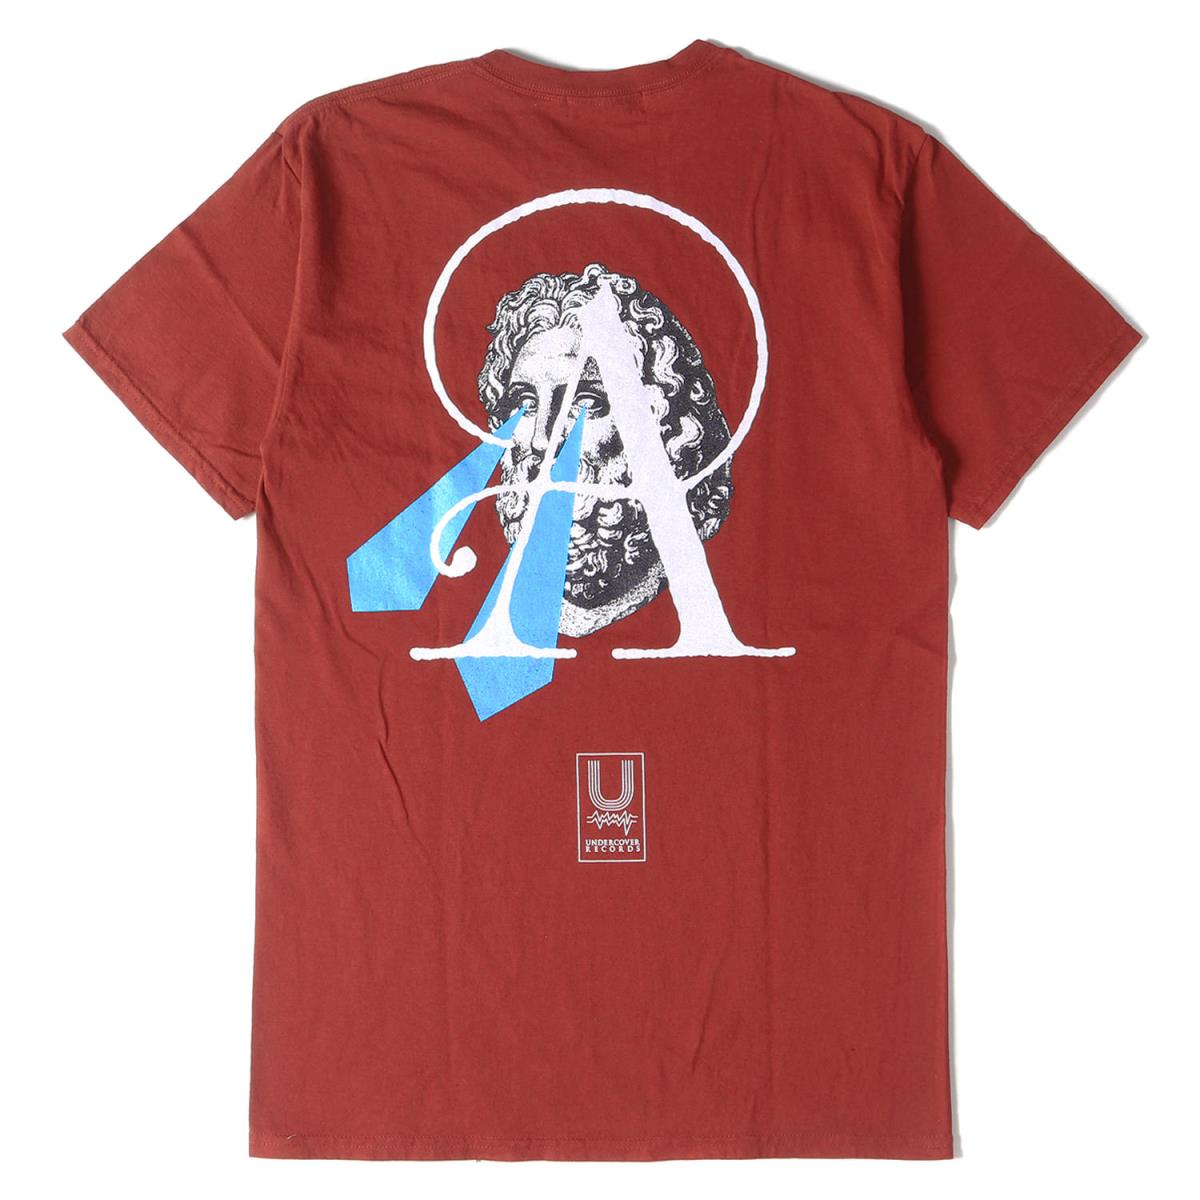 UNDERCOVER アンダーカバー Tシャツ 19SS UNDERCOVER RECORDS グラフィック Tシャツ ダークレッド M  【メンズ】【美品】【K2751】 - edurng.go.th